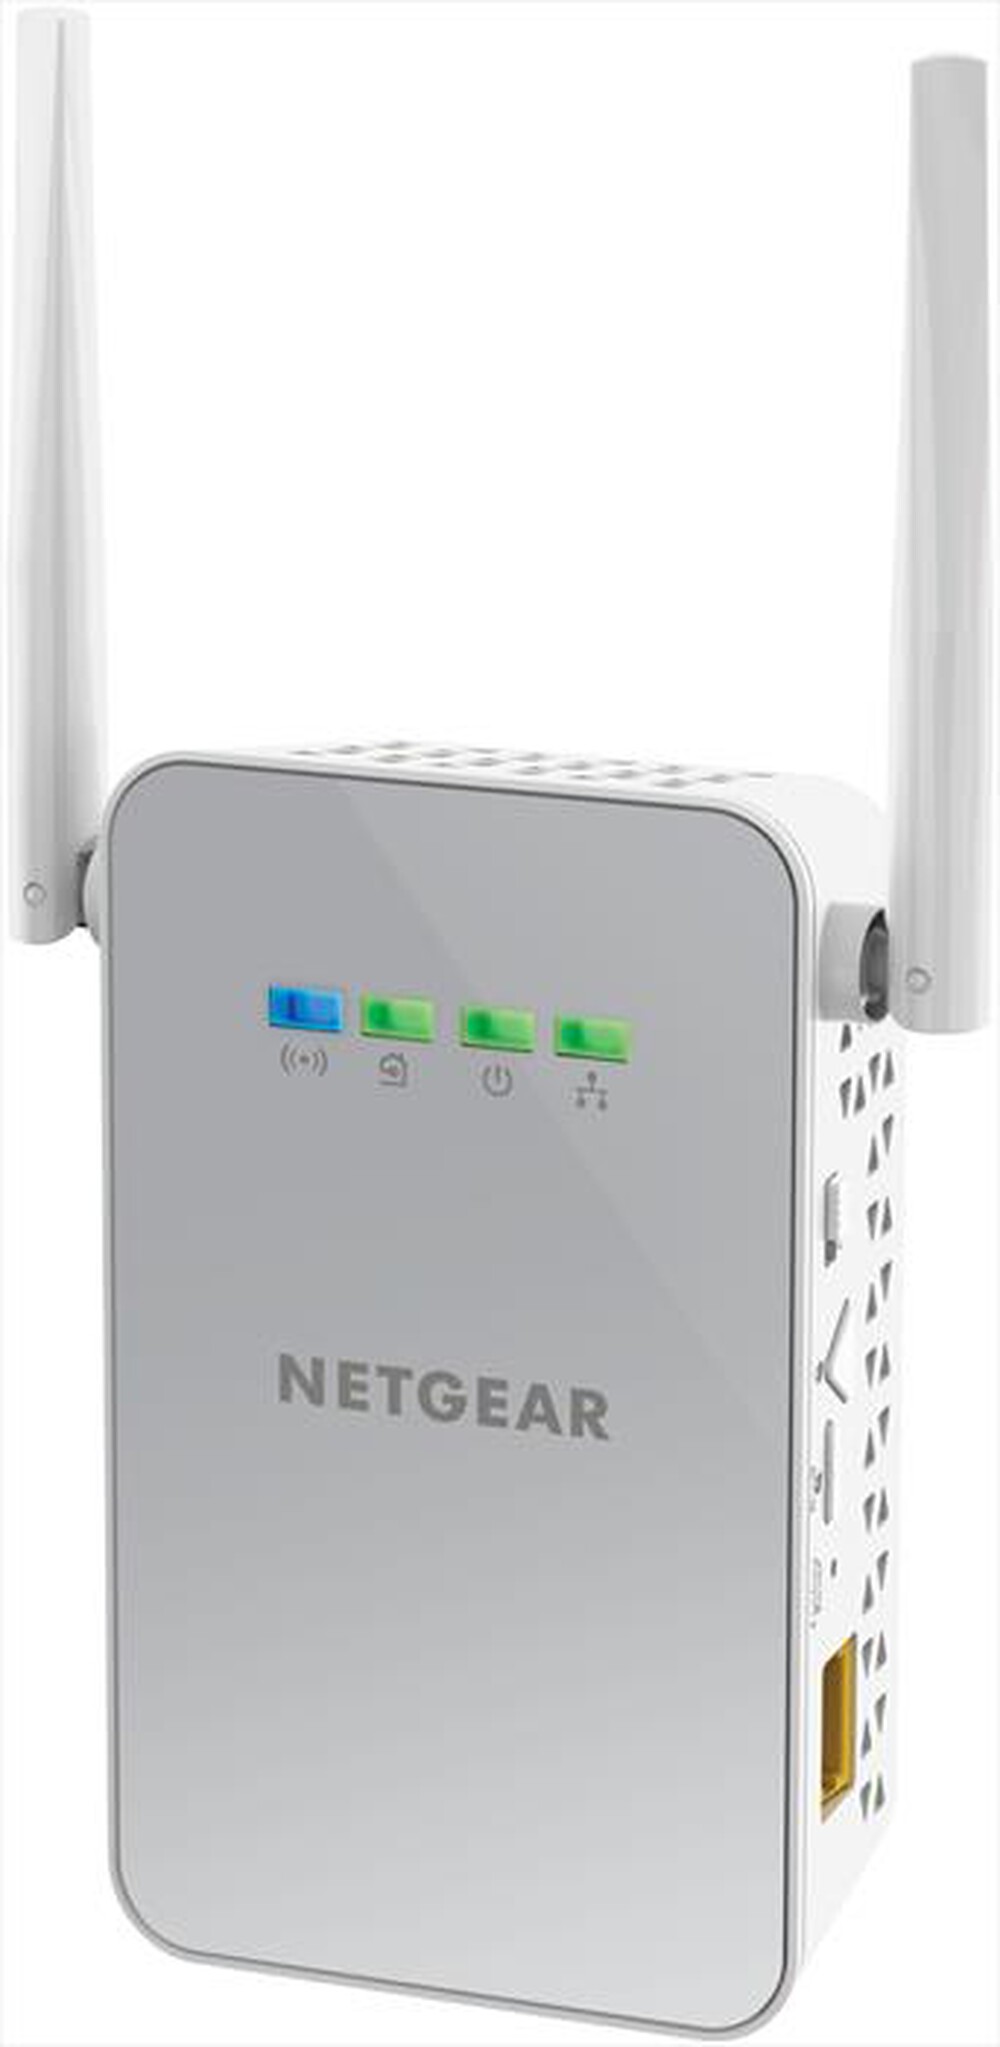 "NETGEAR - PLW1000 PowerLINE 1000 + WiFi"